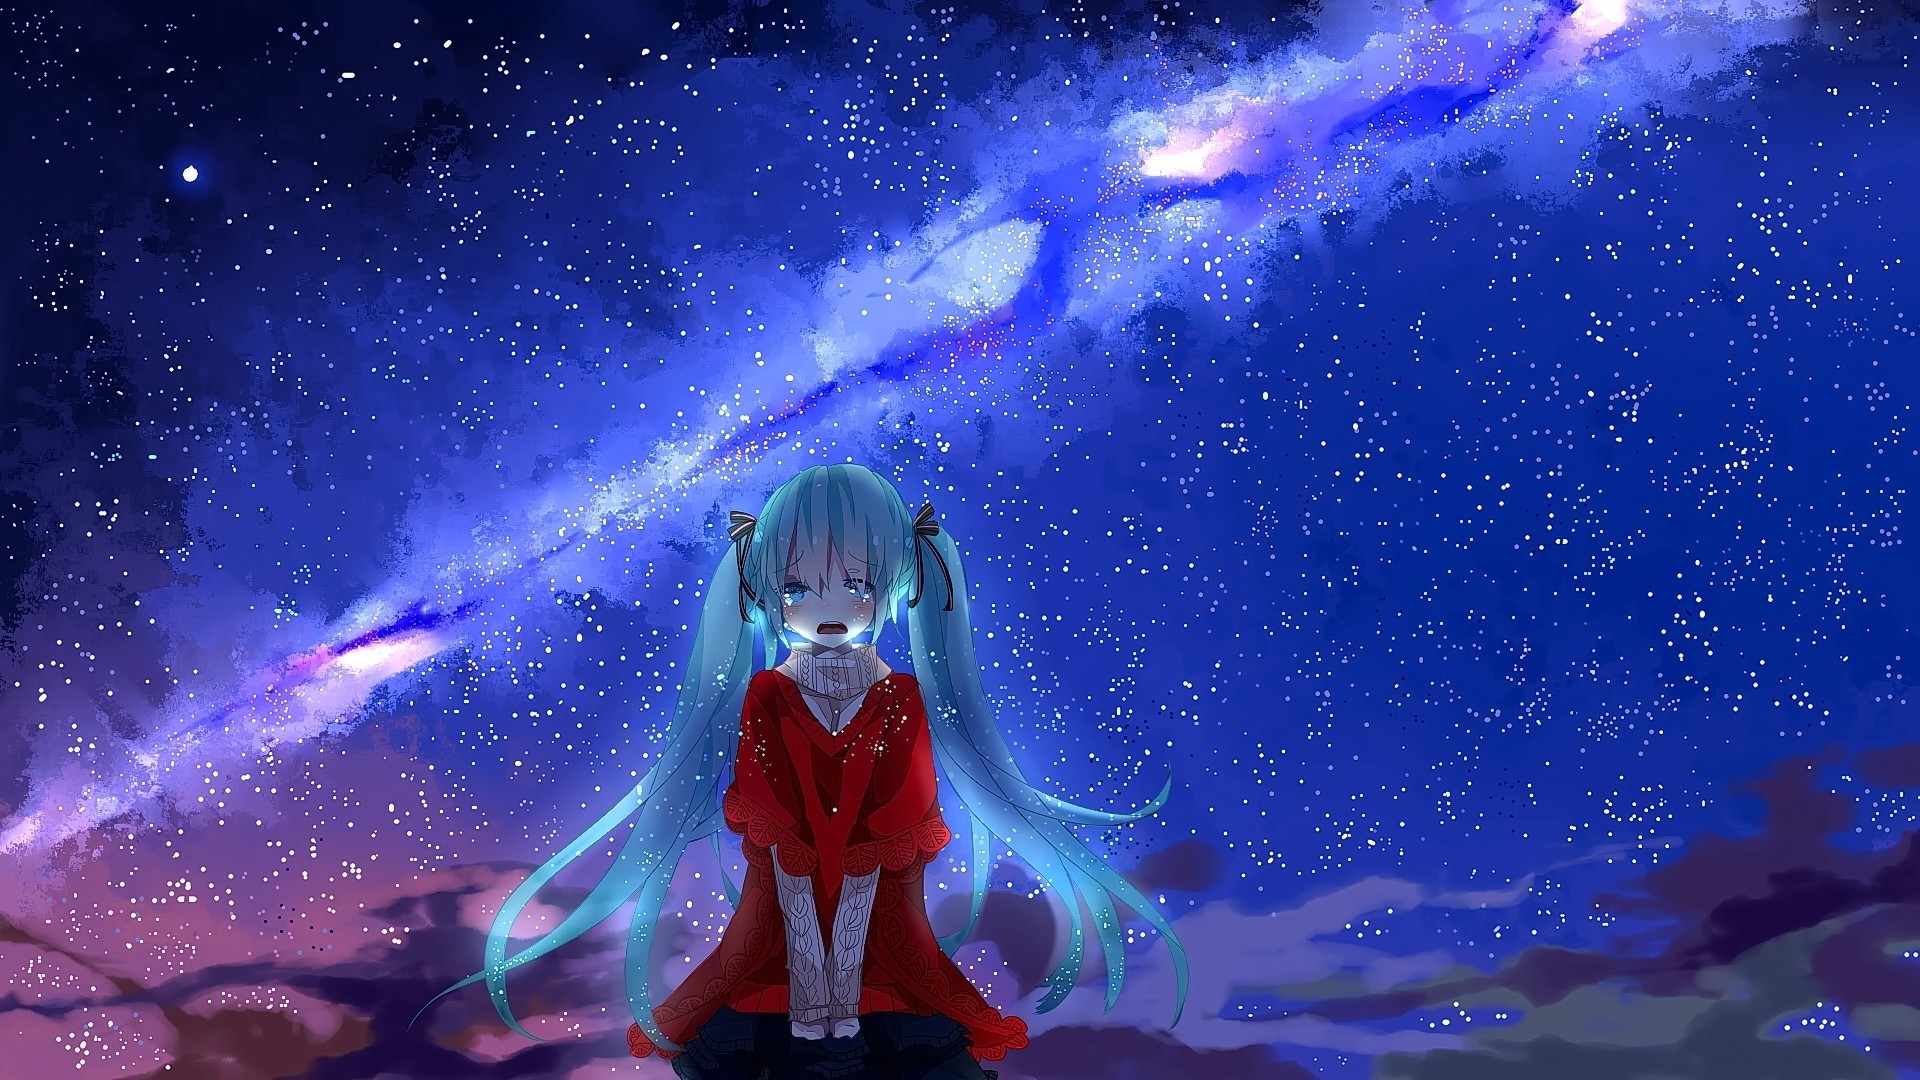 8 Di Bawah Kerlap-kerlip Bintang Di Langit Malam - Sad Anime Wallpaper Hd , HD Wallpaper & Backgrounds